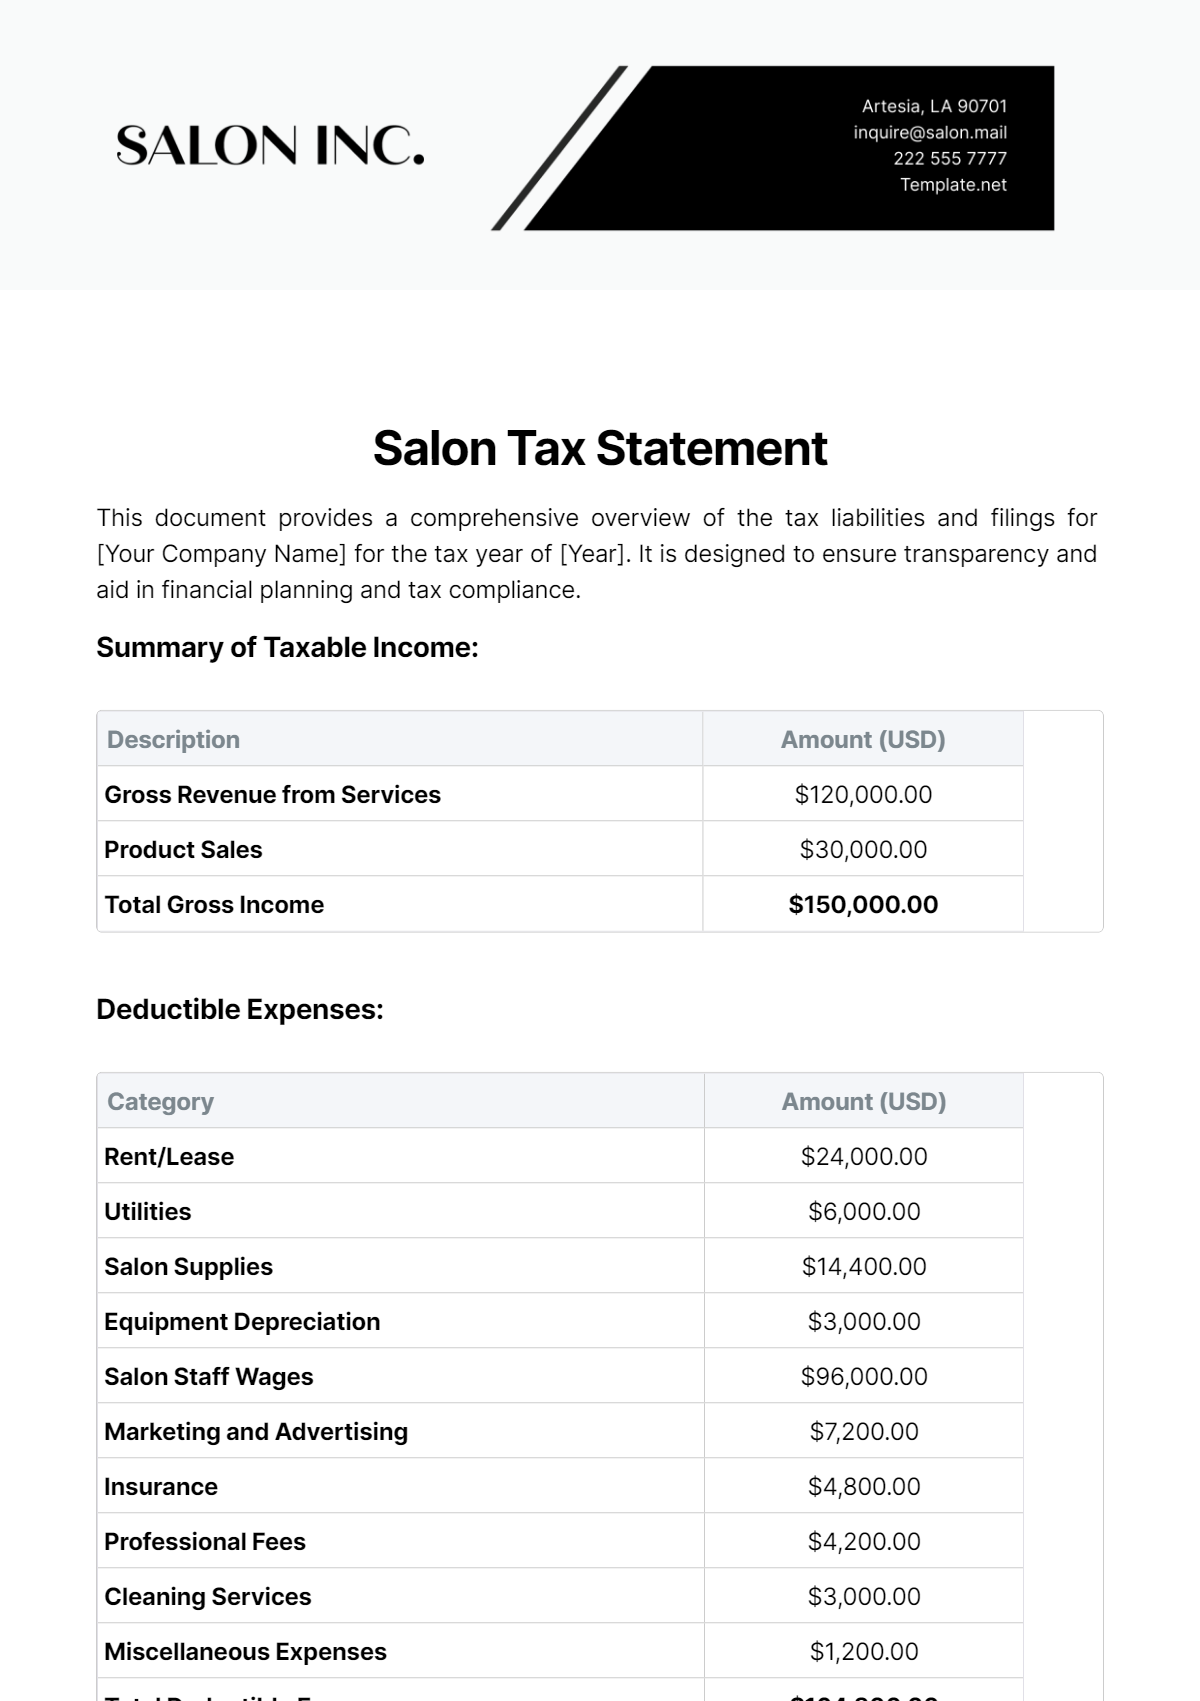 Salon Tax Statement Template